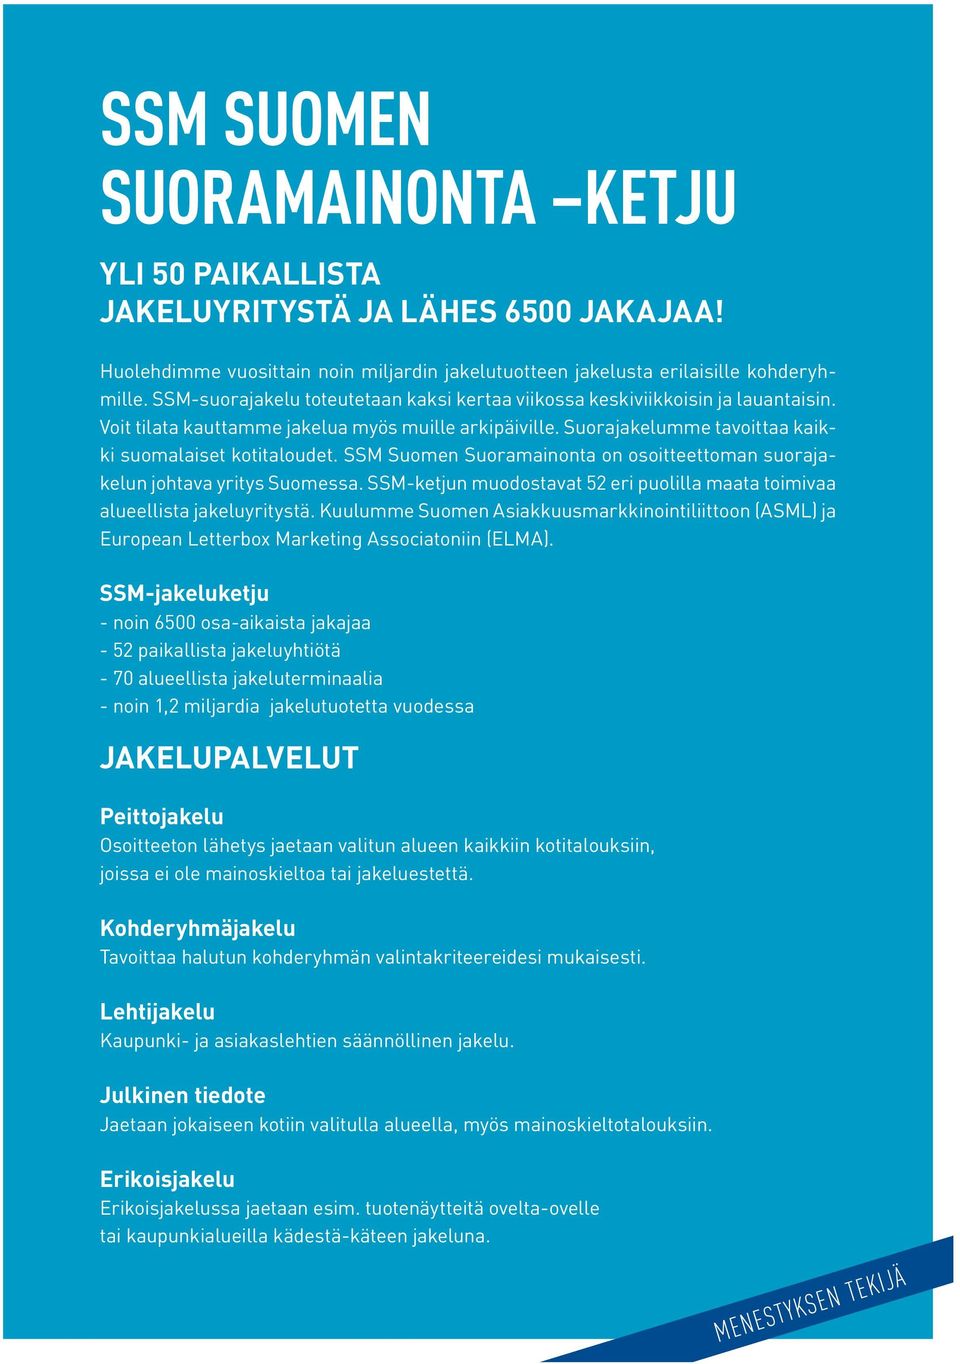 SSM Suomen Suoramainonta on osoitteettoman suorajakelun johtava yritys Suomessa.